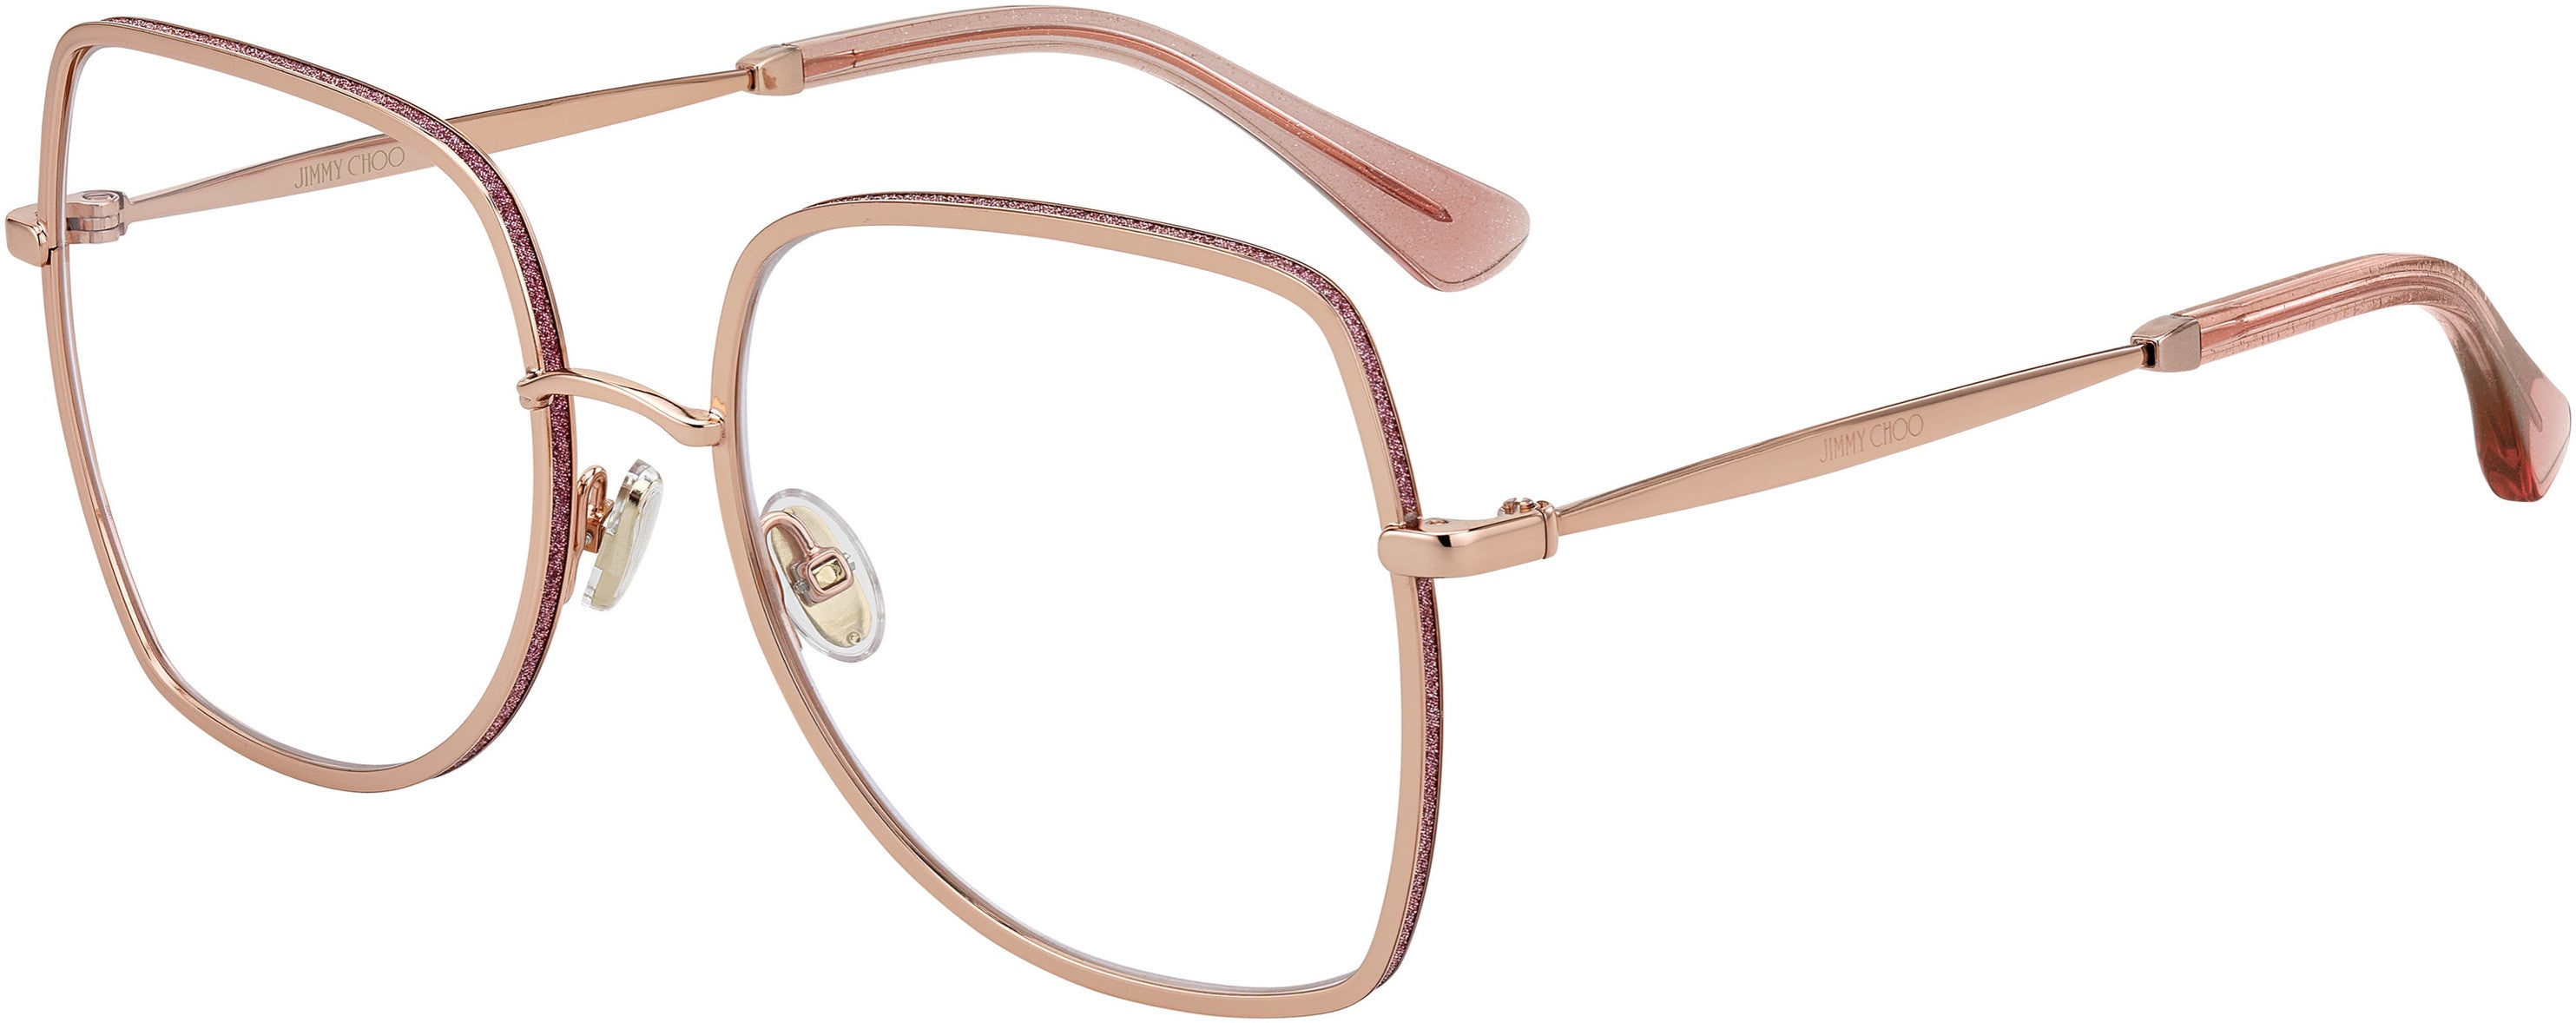  Jimmy Choo 228 Square Eyeglasses 0EYR-0EYR  Gold Pink (00 Demo Lens)